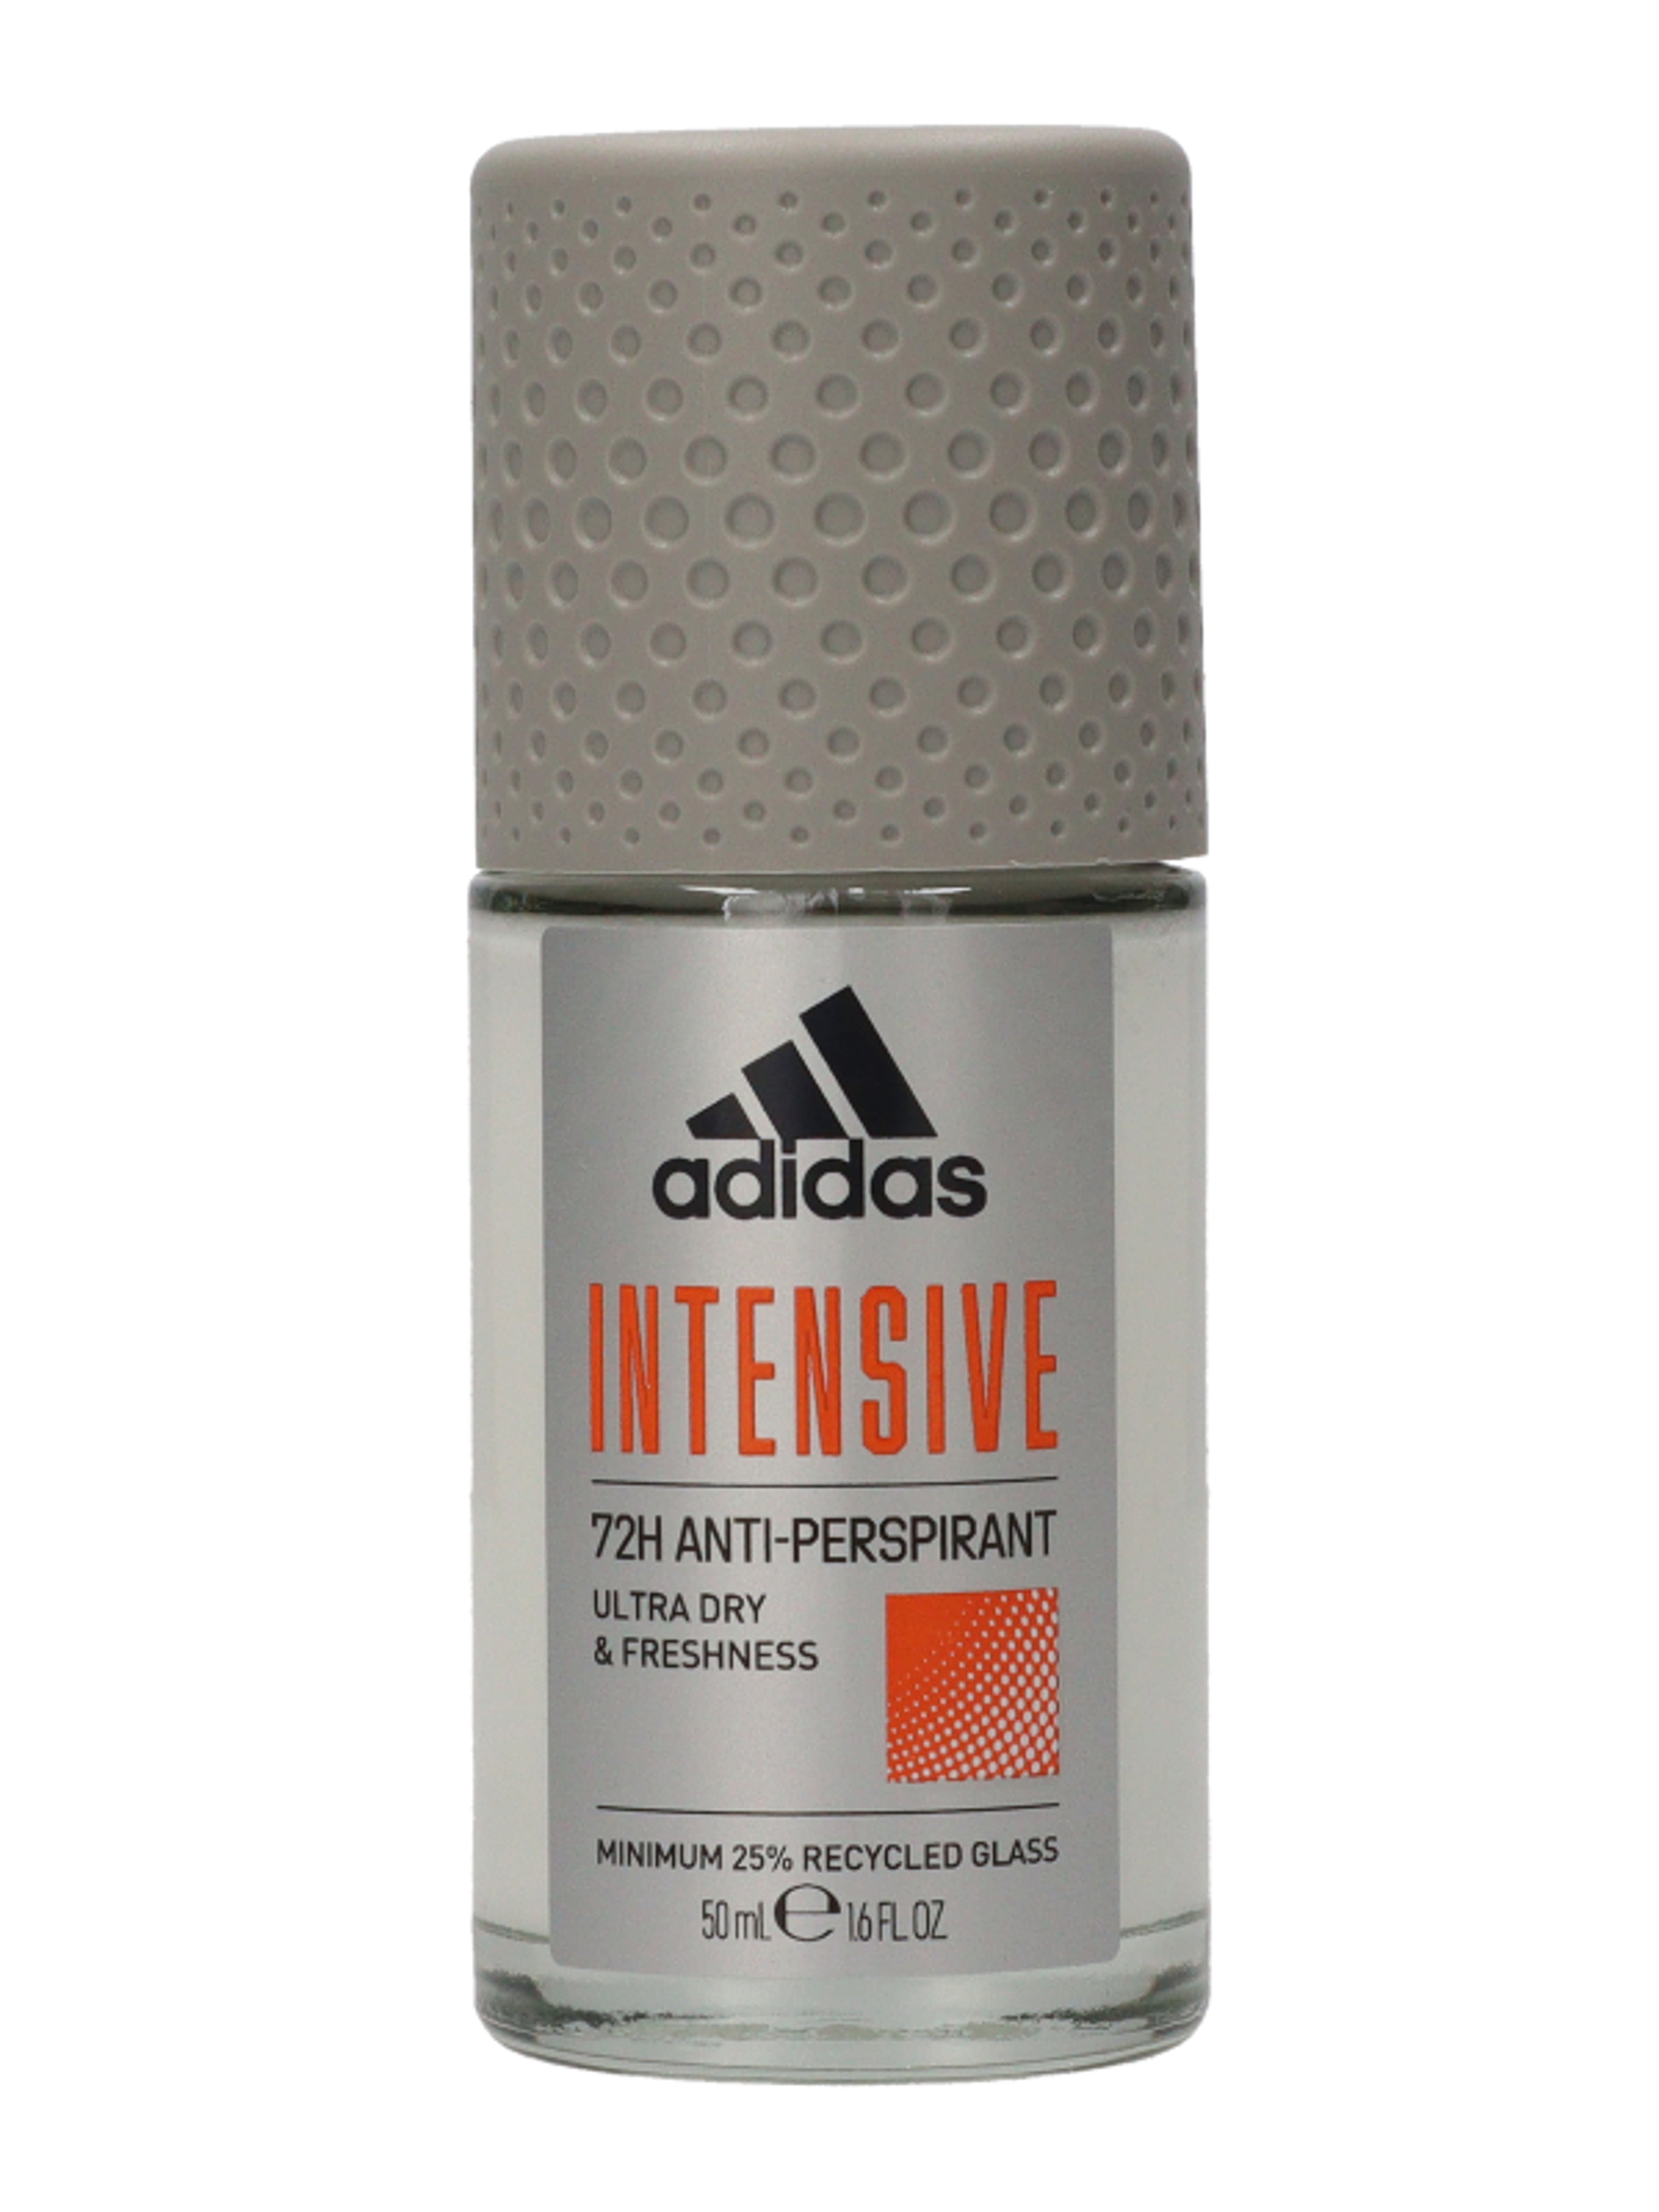 Adidas Intensive férfi izzadásgátló golyós dezodor - 50 ml